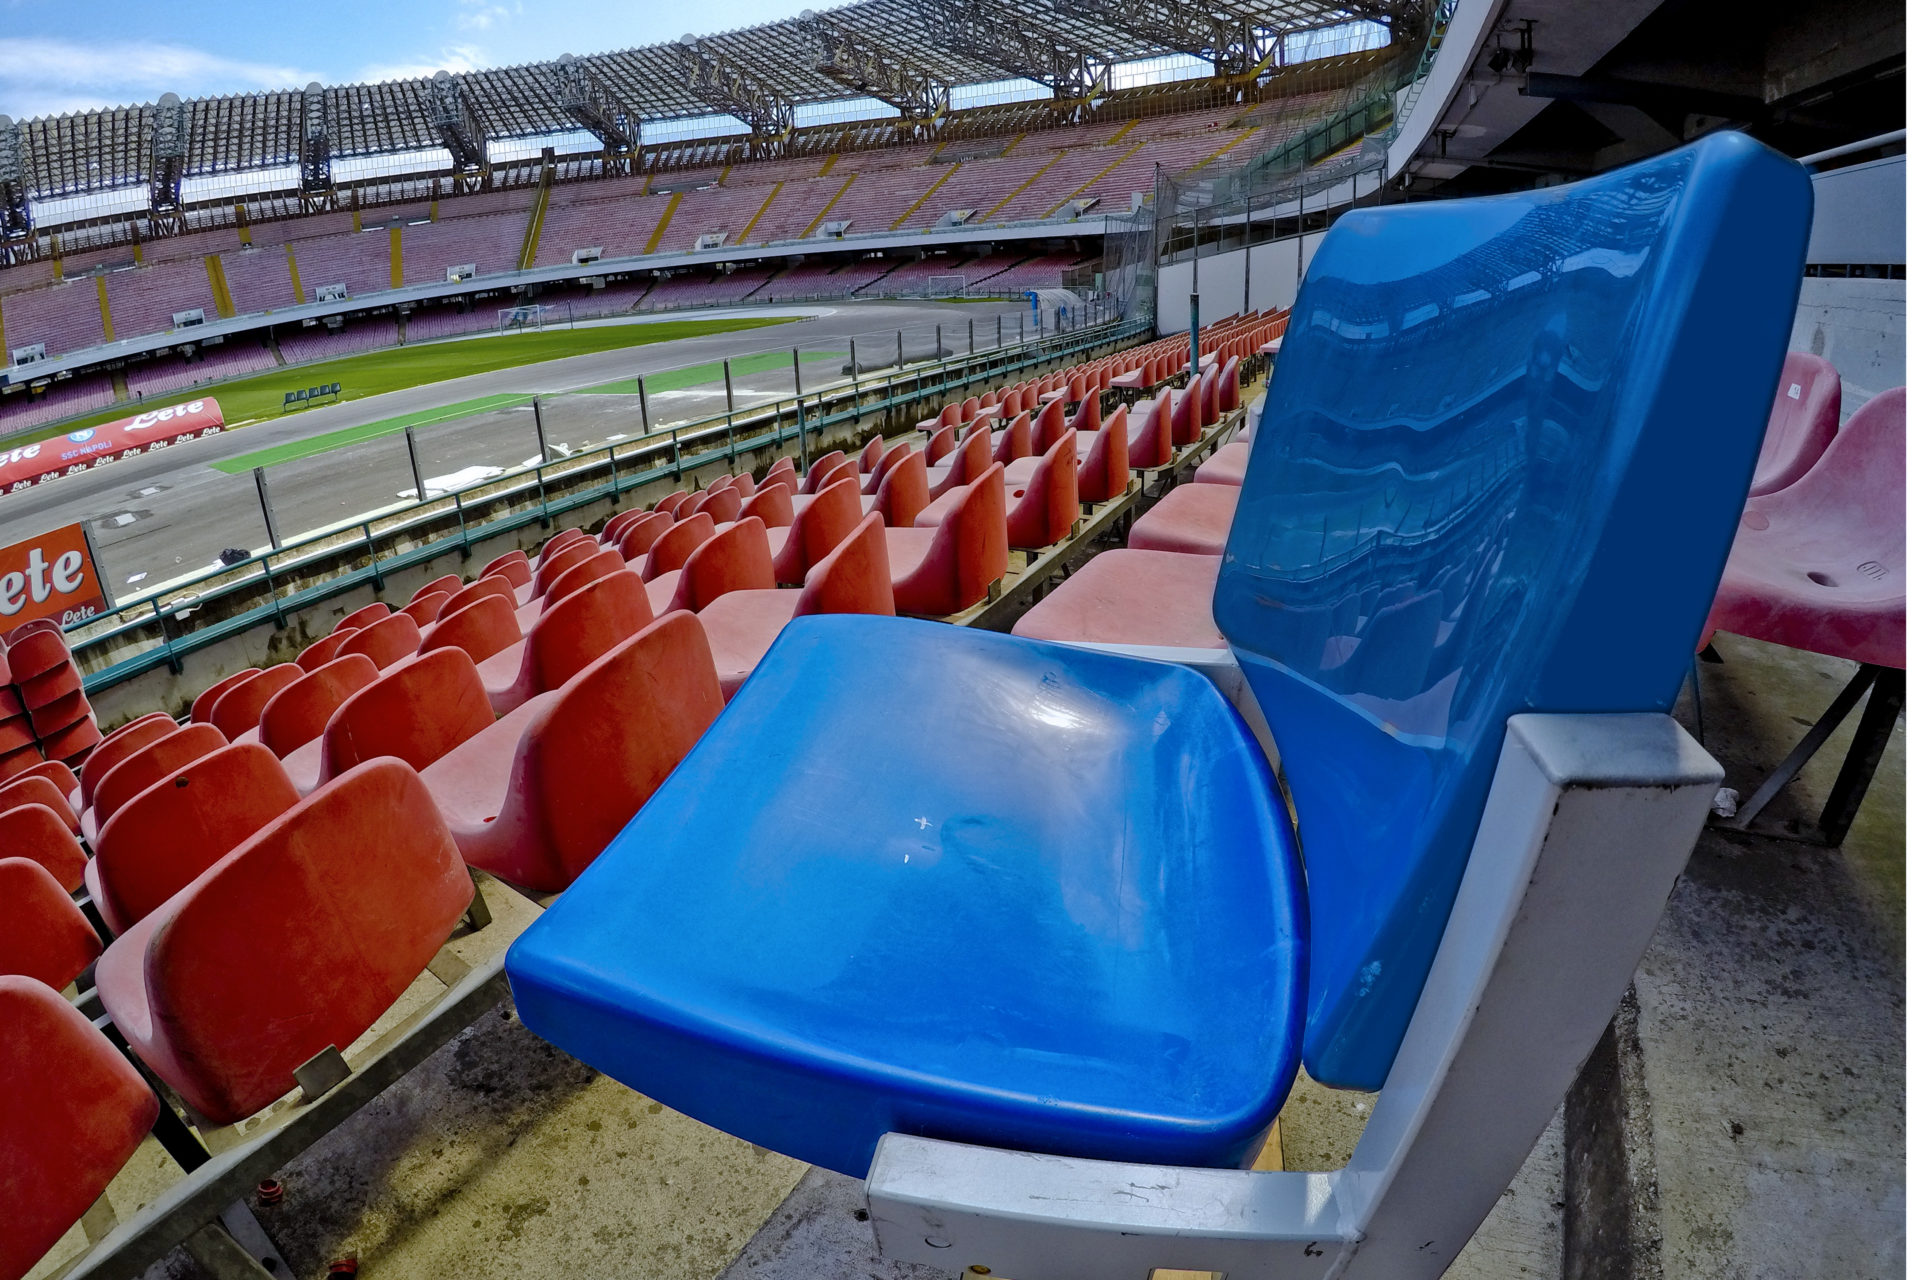 Napoli, Stadio San Paolo: Al via i lavori per sostituire i seggiolini